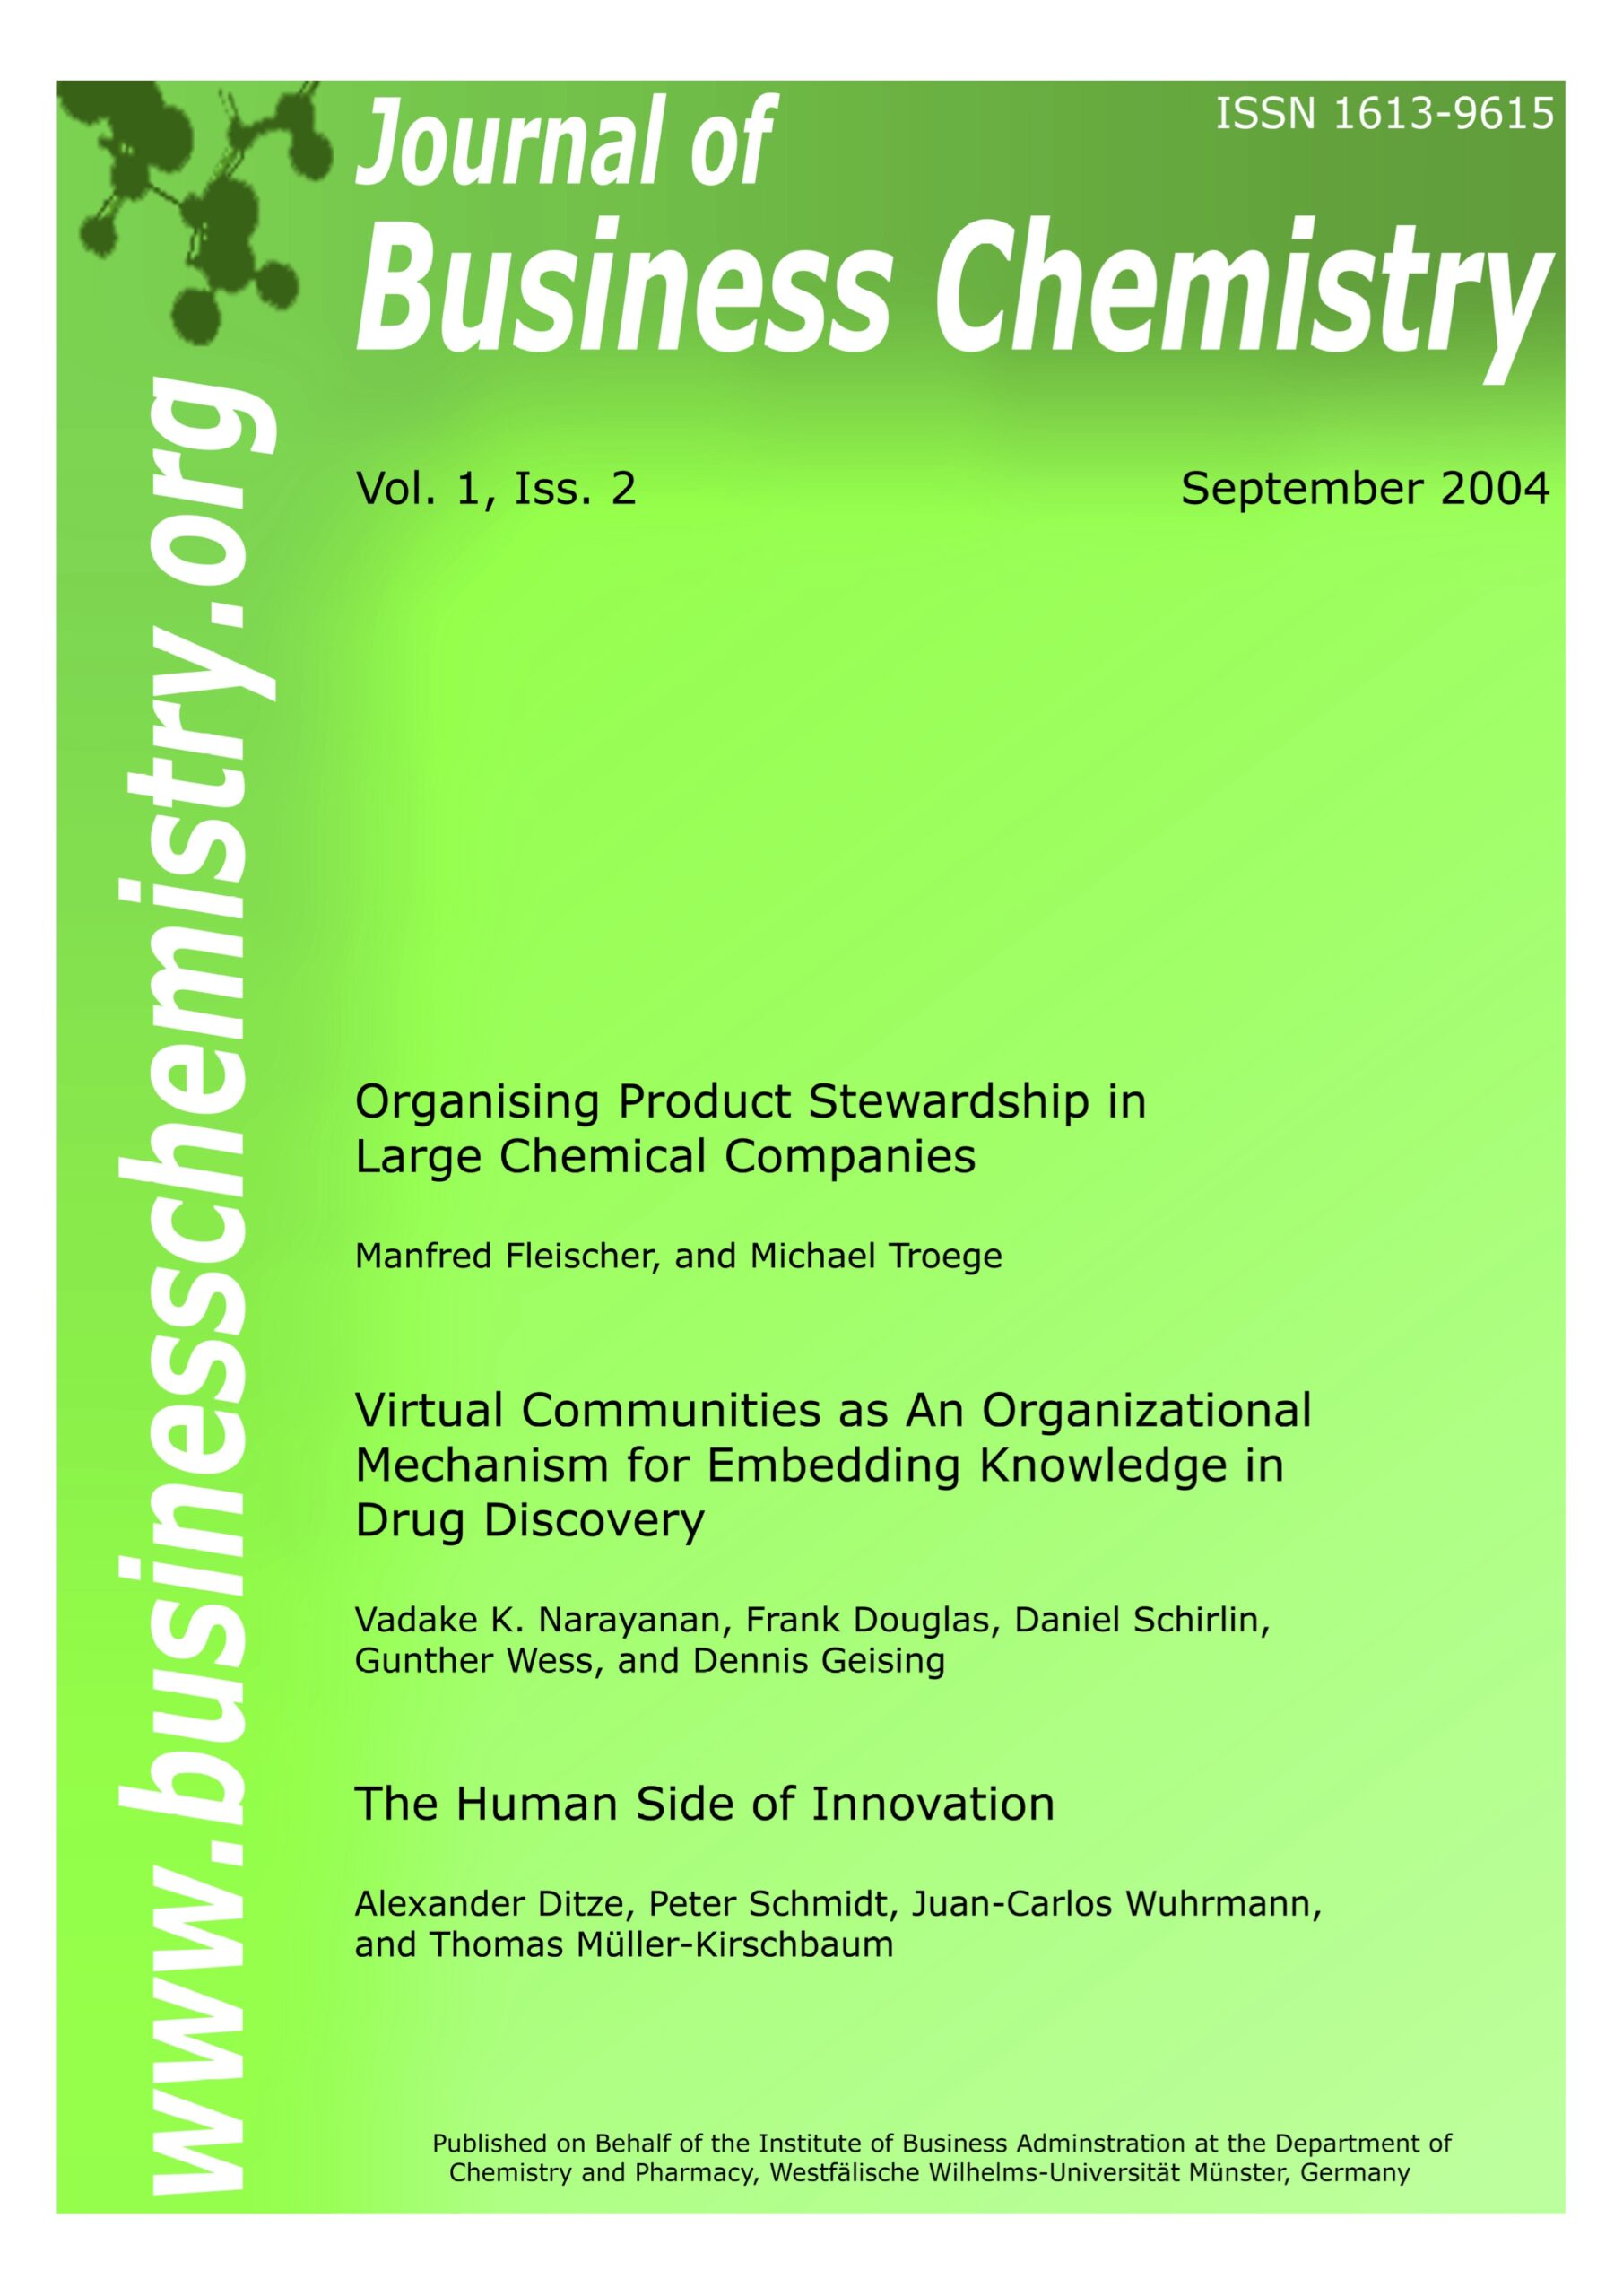 Journal of Business Chemistry September 2004